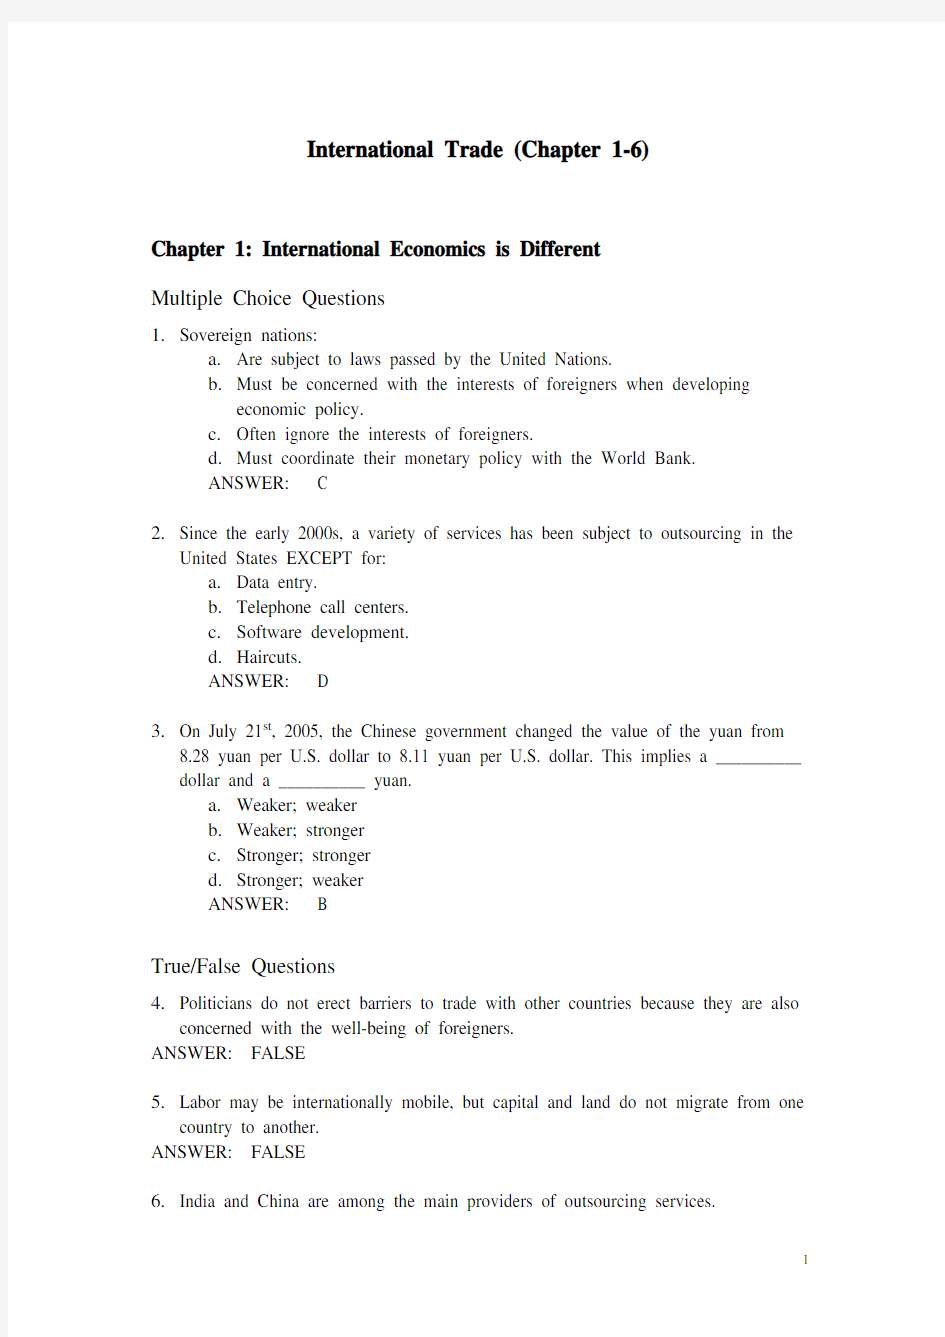 国际贸易课堂练习题(1-6章)